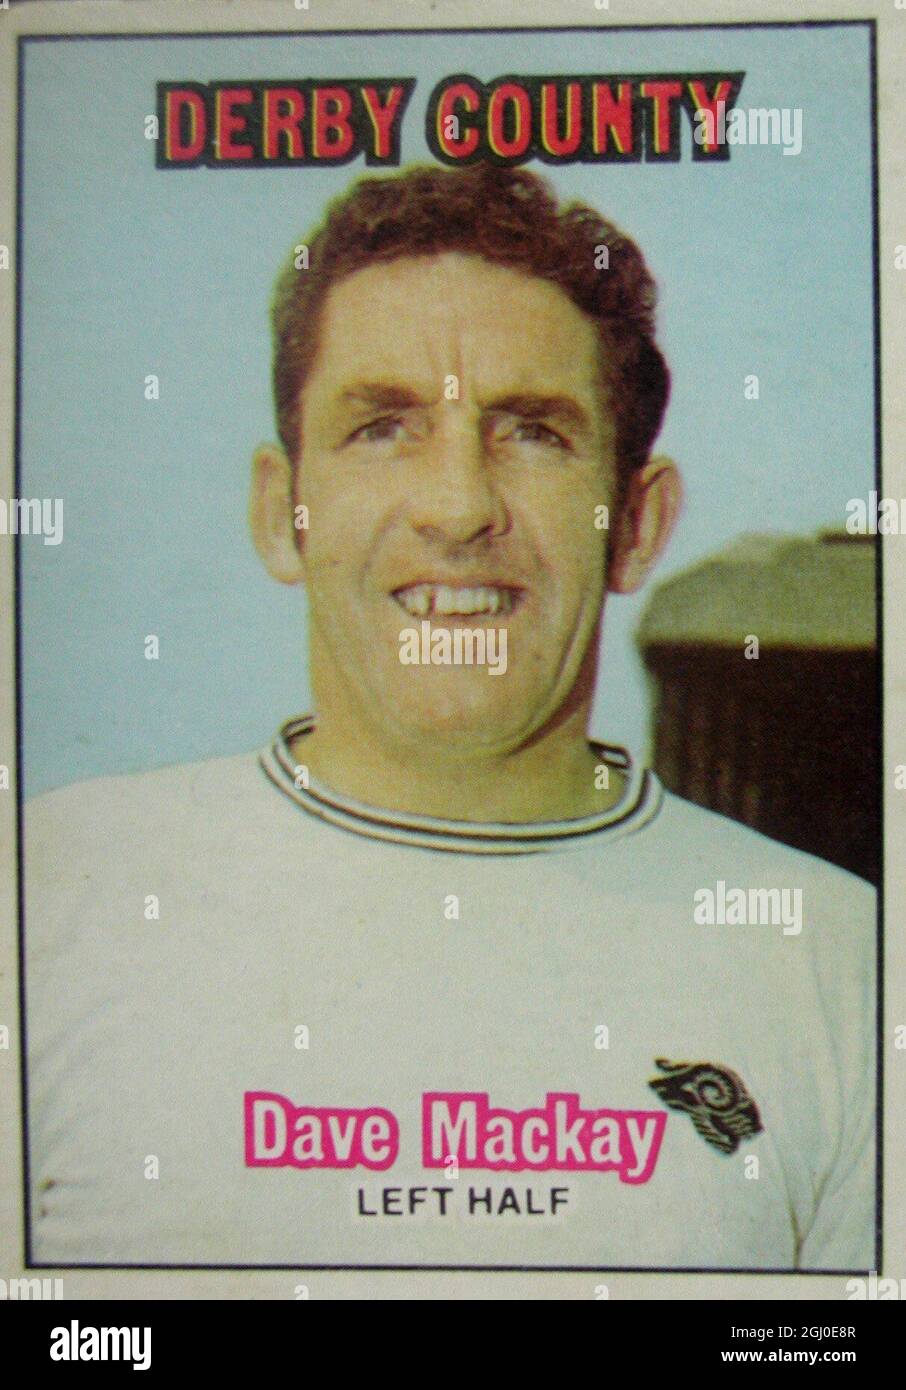 Dave Mackay - Derby County Mackay, die treibende Kraft hinter Derby County in den letzten zwei Spielzeiten, war Mitglied der fabelhaften Tottenham-"Double"-Seite und nach der Erholung von einem zweimal gebrochenen Bein, führte Spurs zu einem weiteren FA Cup-Triumph im Jahr 1967. Er wurde zusammen mit Tony Book zum gemeinsamen Fußballer des Jahres 1969-70 gewählt und zählt zu den angesehensten Spielern der Football League. Stockfoto